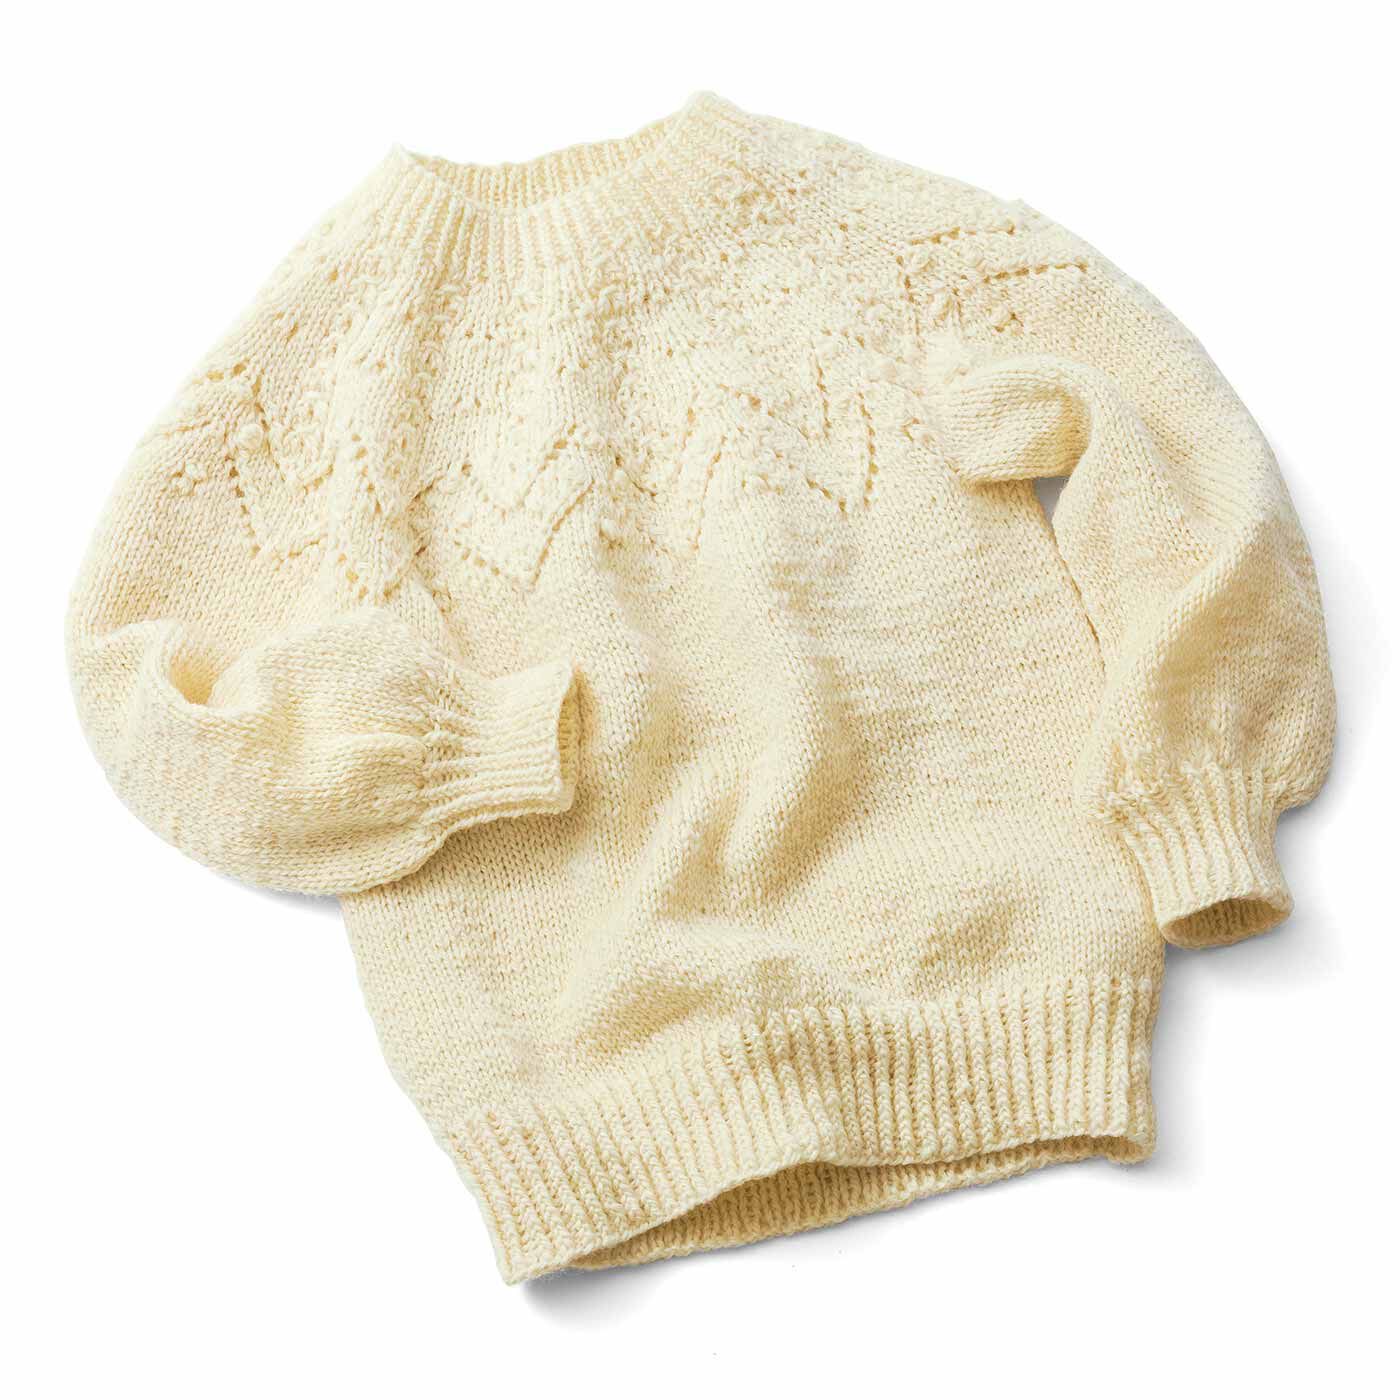 クチュリエ|今こそチャレンジ 輪針で編める 手編みのセーター〈キナリ〉